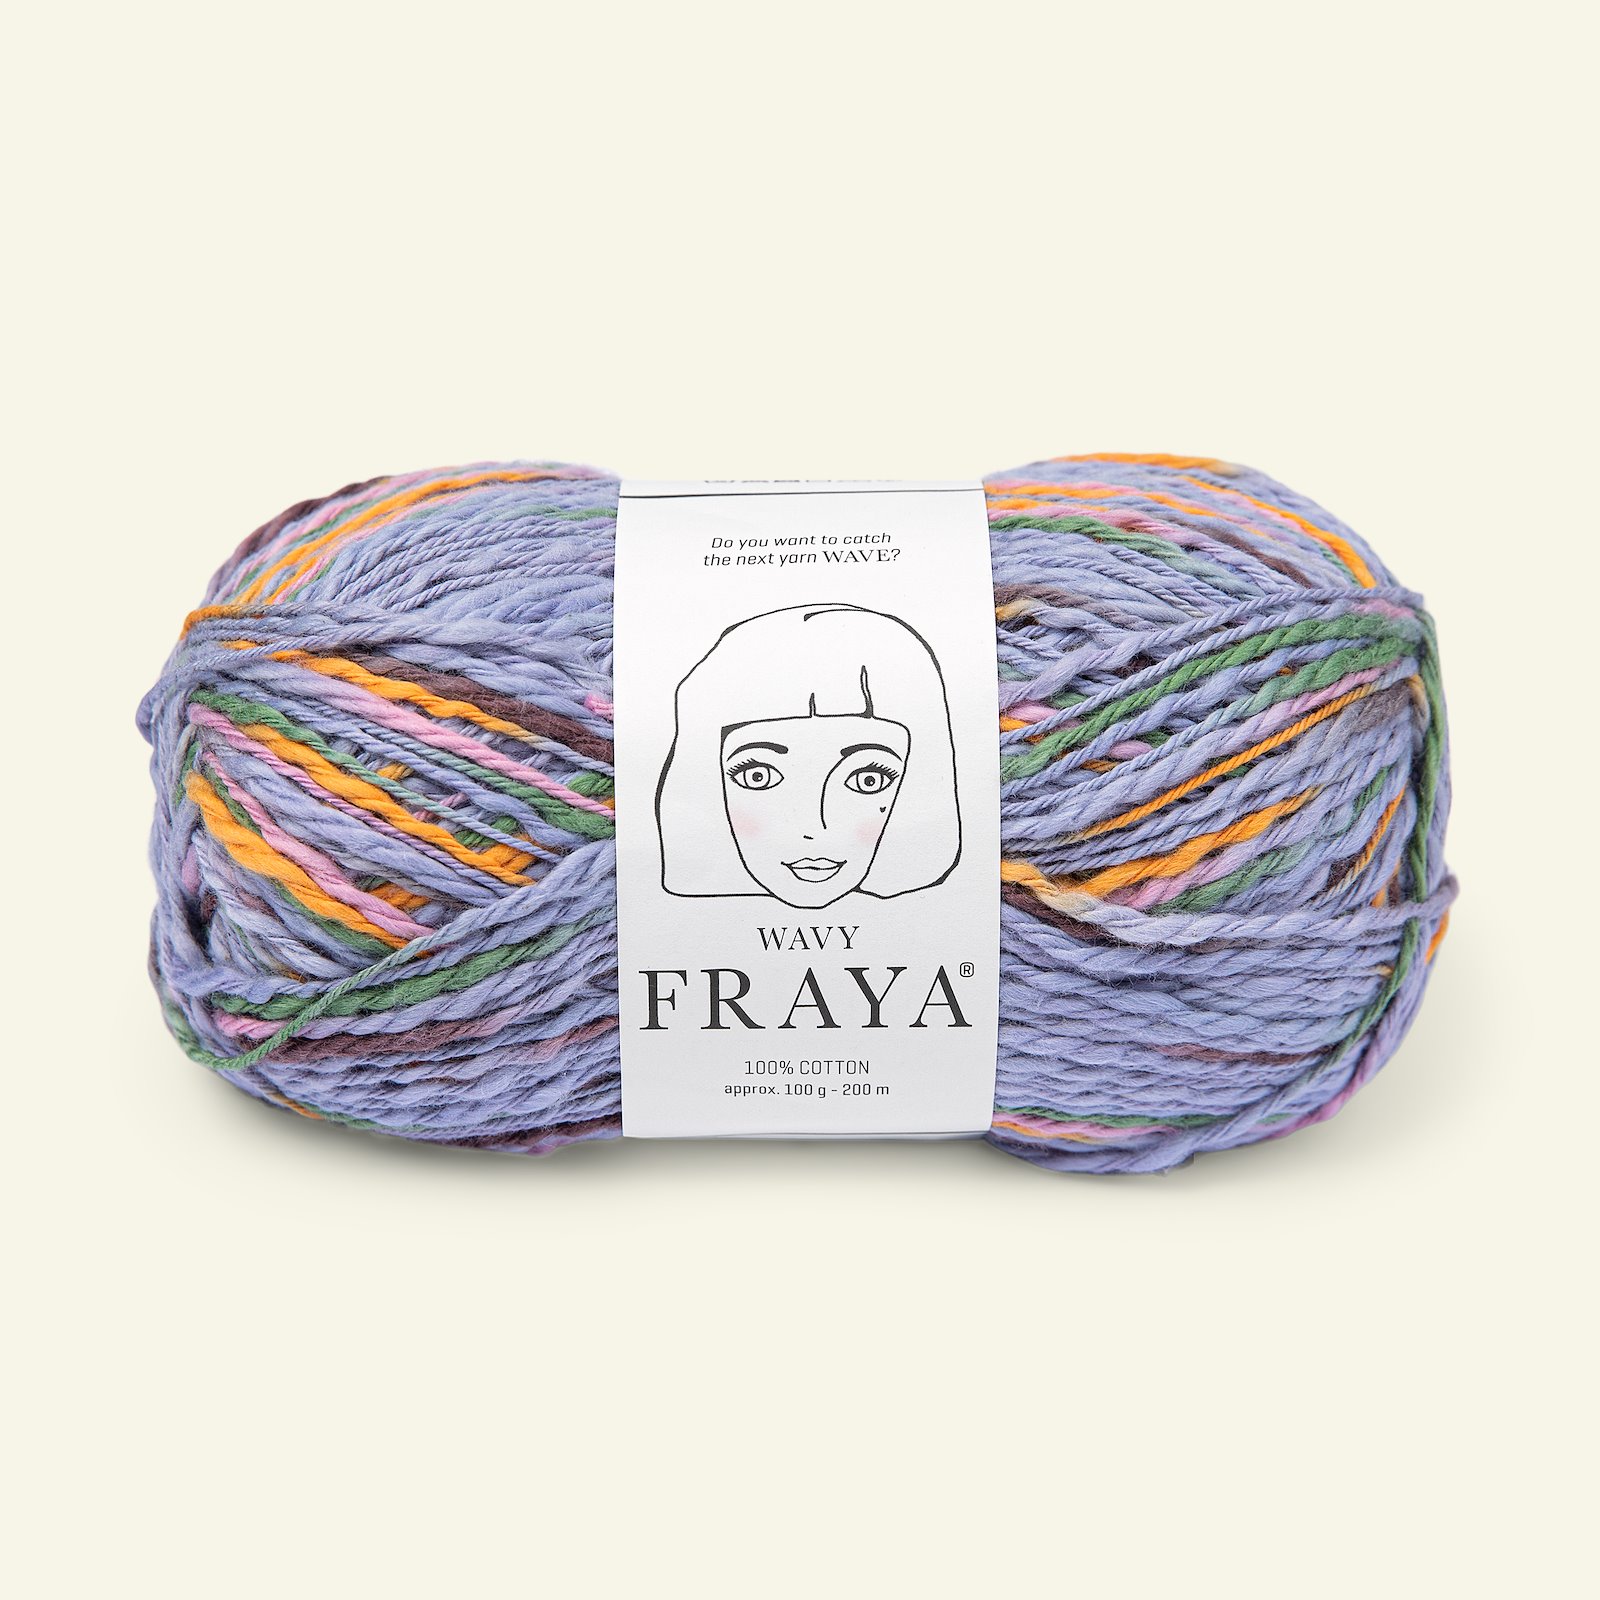 FRAYA, textured cotton yarn "Wavy", purple-orange mix 90000201_pack